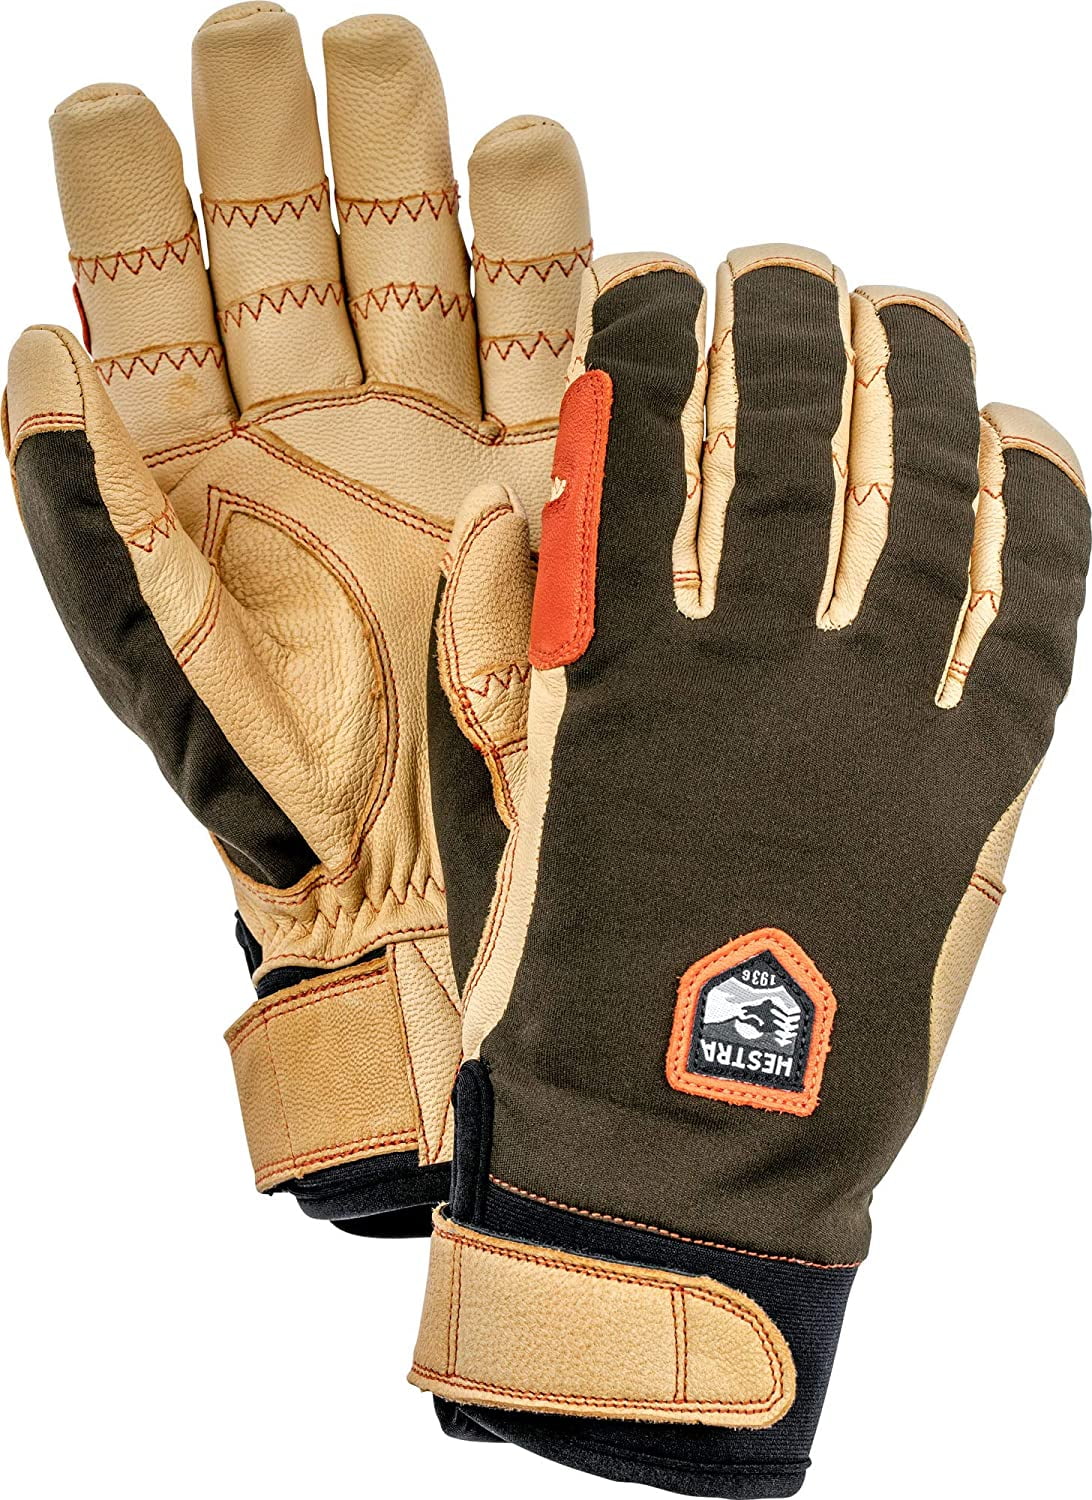 2022 Men's Hestra Ergo Leather 5 Finger Ski Gloves Size 9 Black 32950 